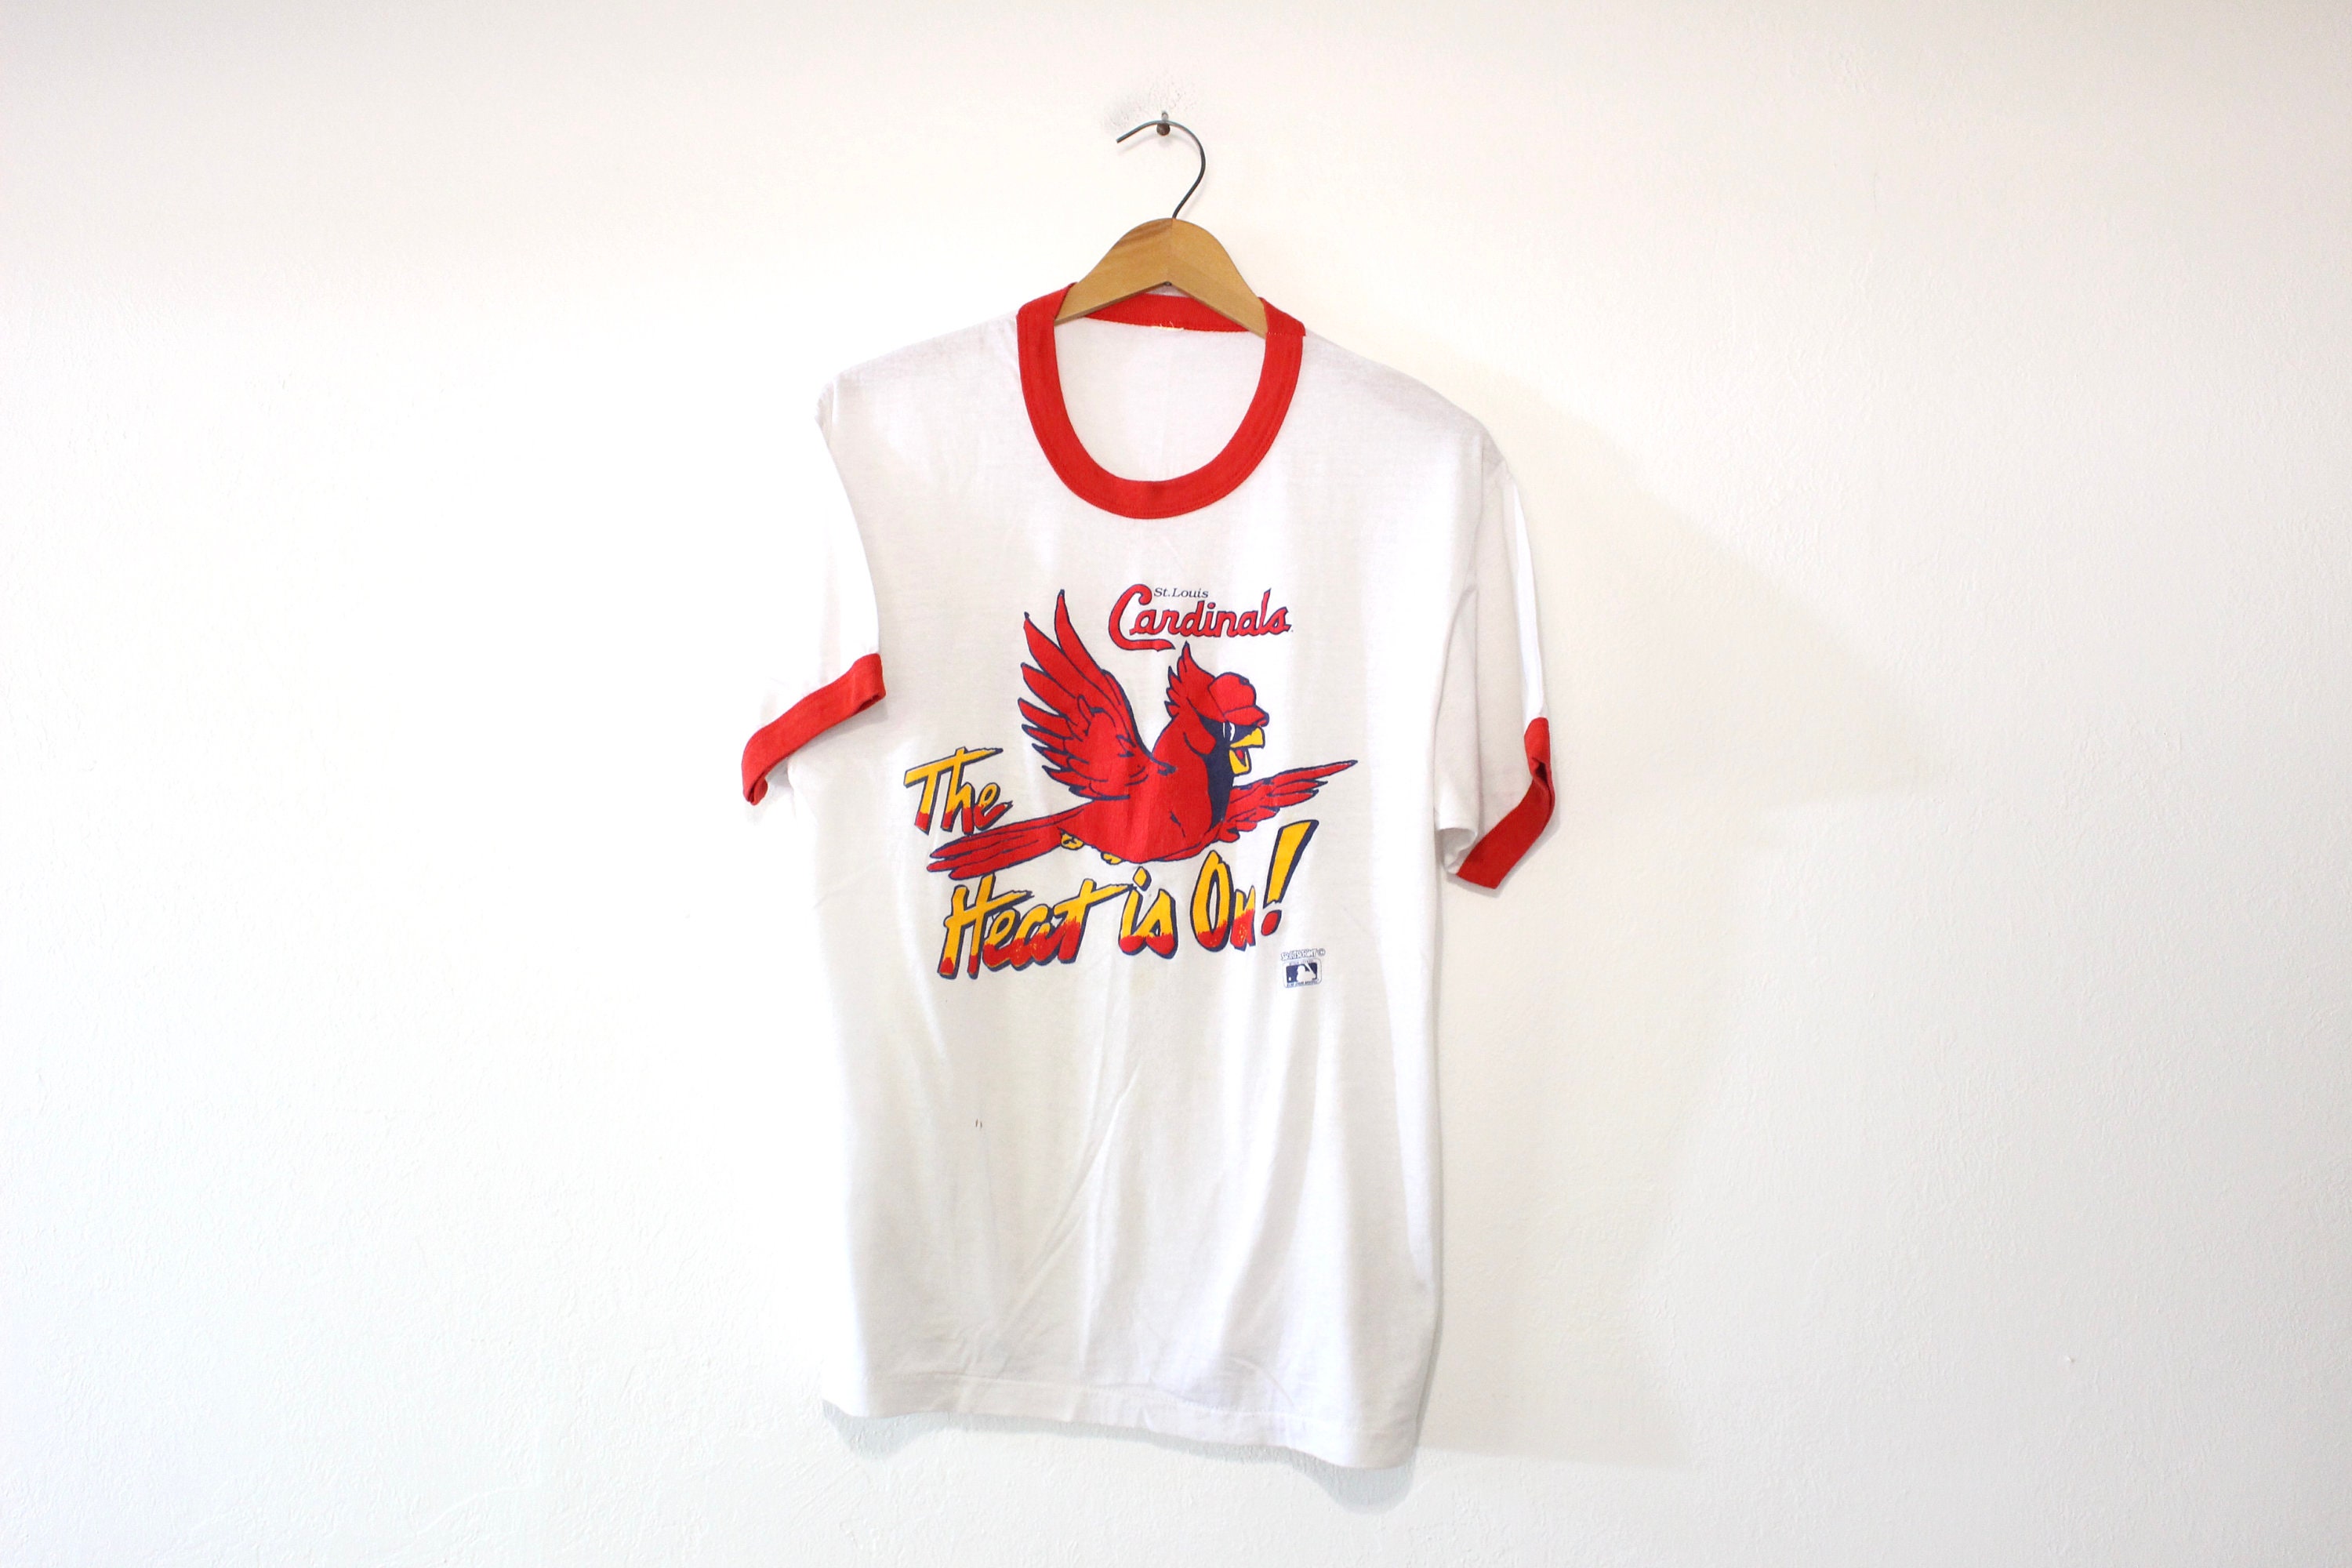 Shirtzi Vintage St Louis Cardinal Crewneck Sweatshirt / T-Shirt, Cardinals Est 1882 Sweatshirt, St Louis Baseball Game Day , Retro Cardinals Shirt